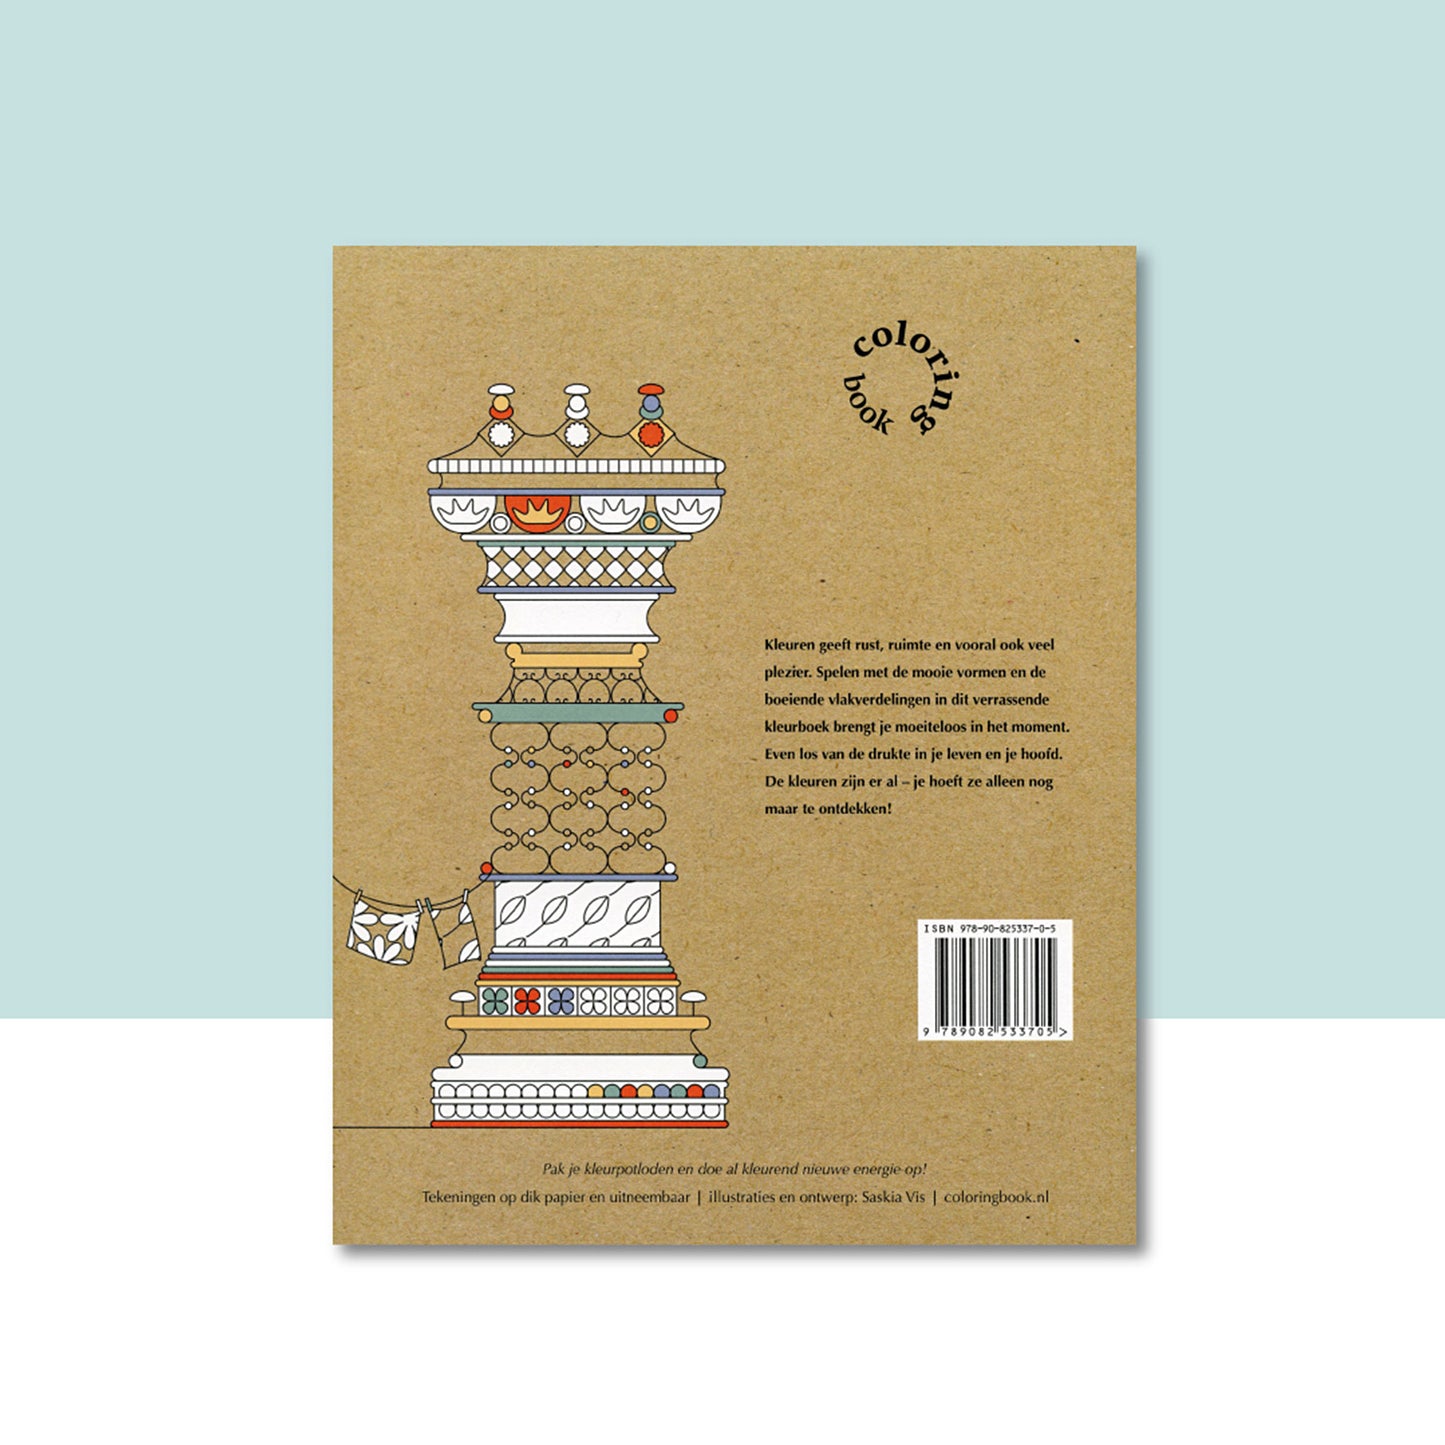 Productafbeelding "(modern dutch) coloring book" nr.1 met de achterzijde van de omslag in beeld